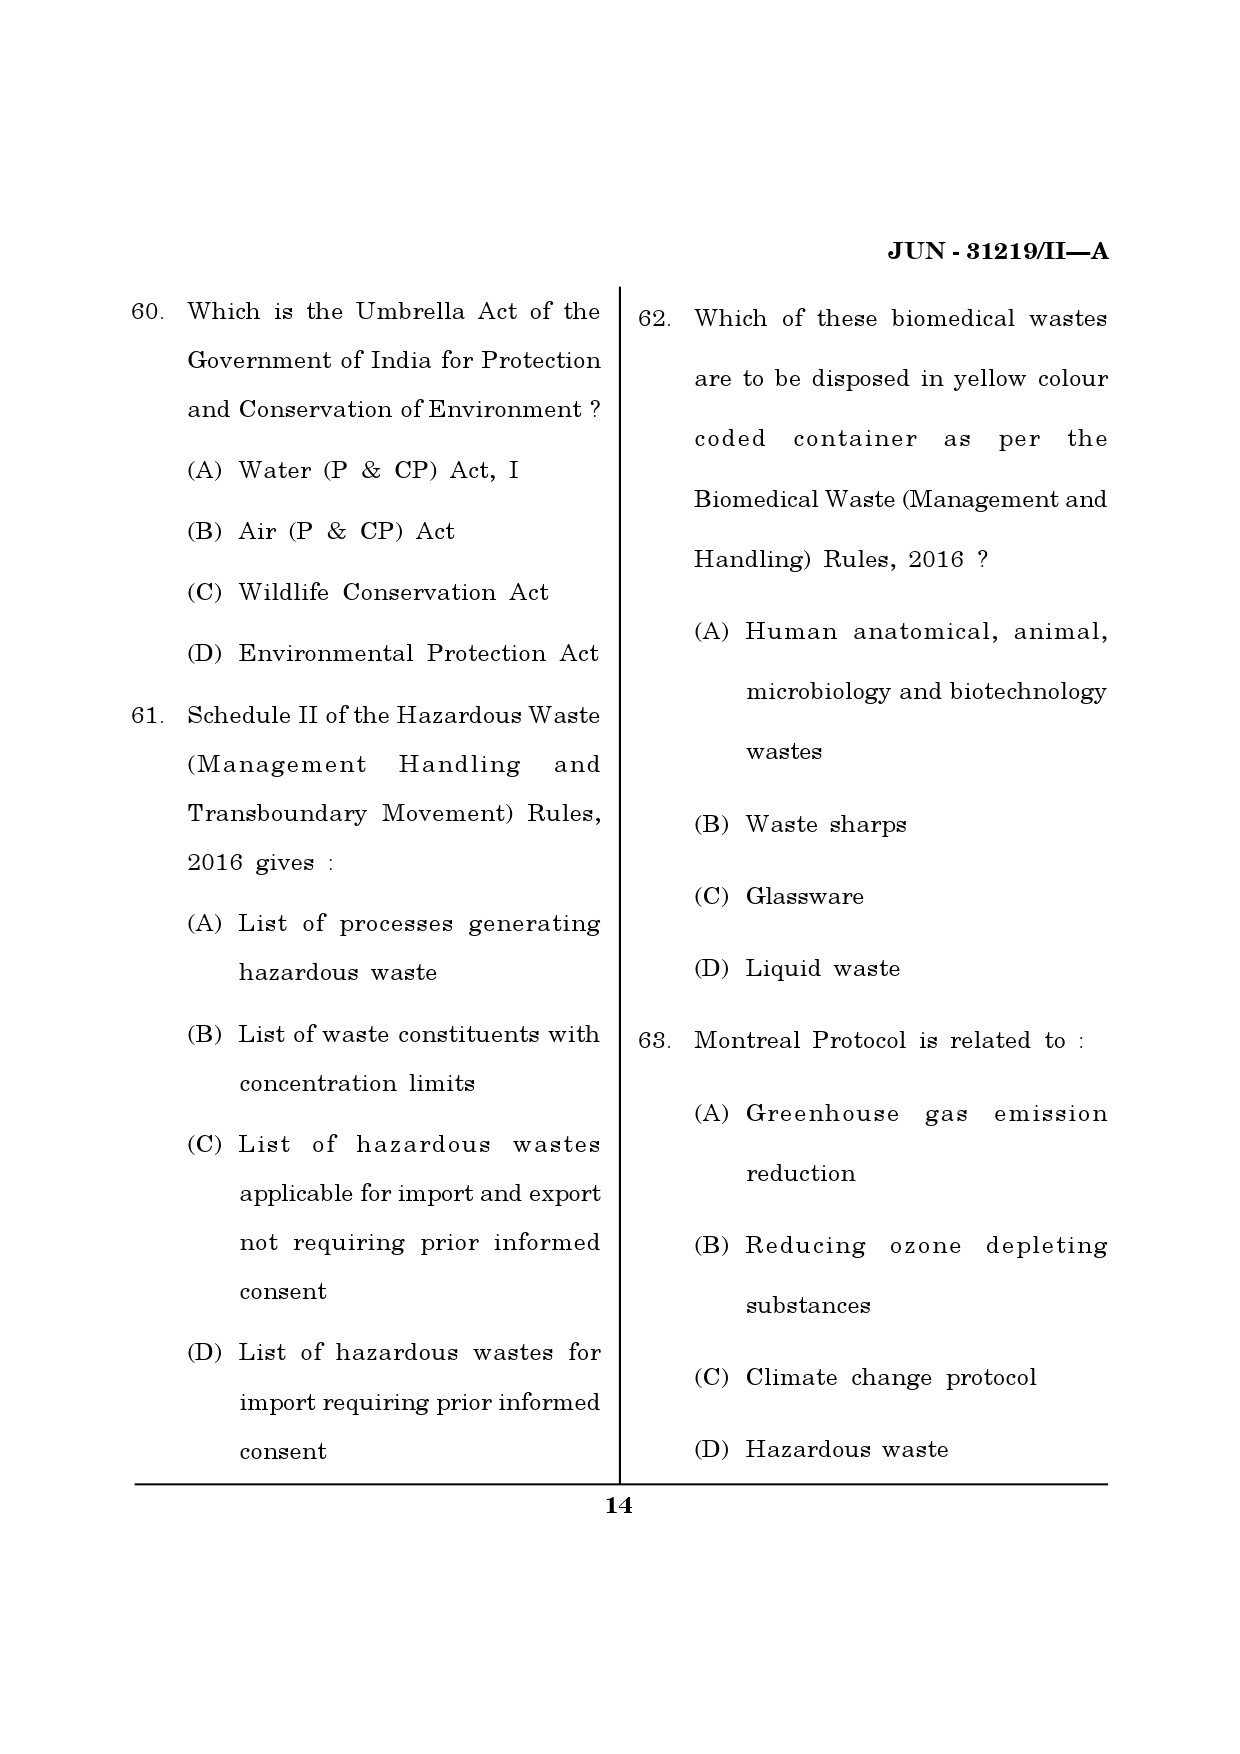 Maharashtra SET Environmental Sciences Question Paper II June 2019 13